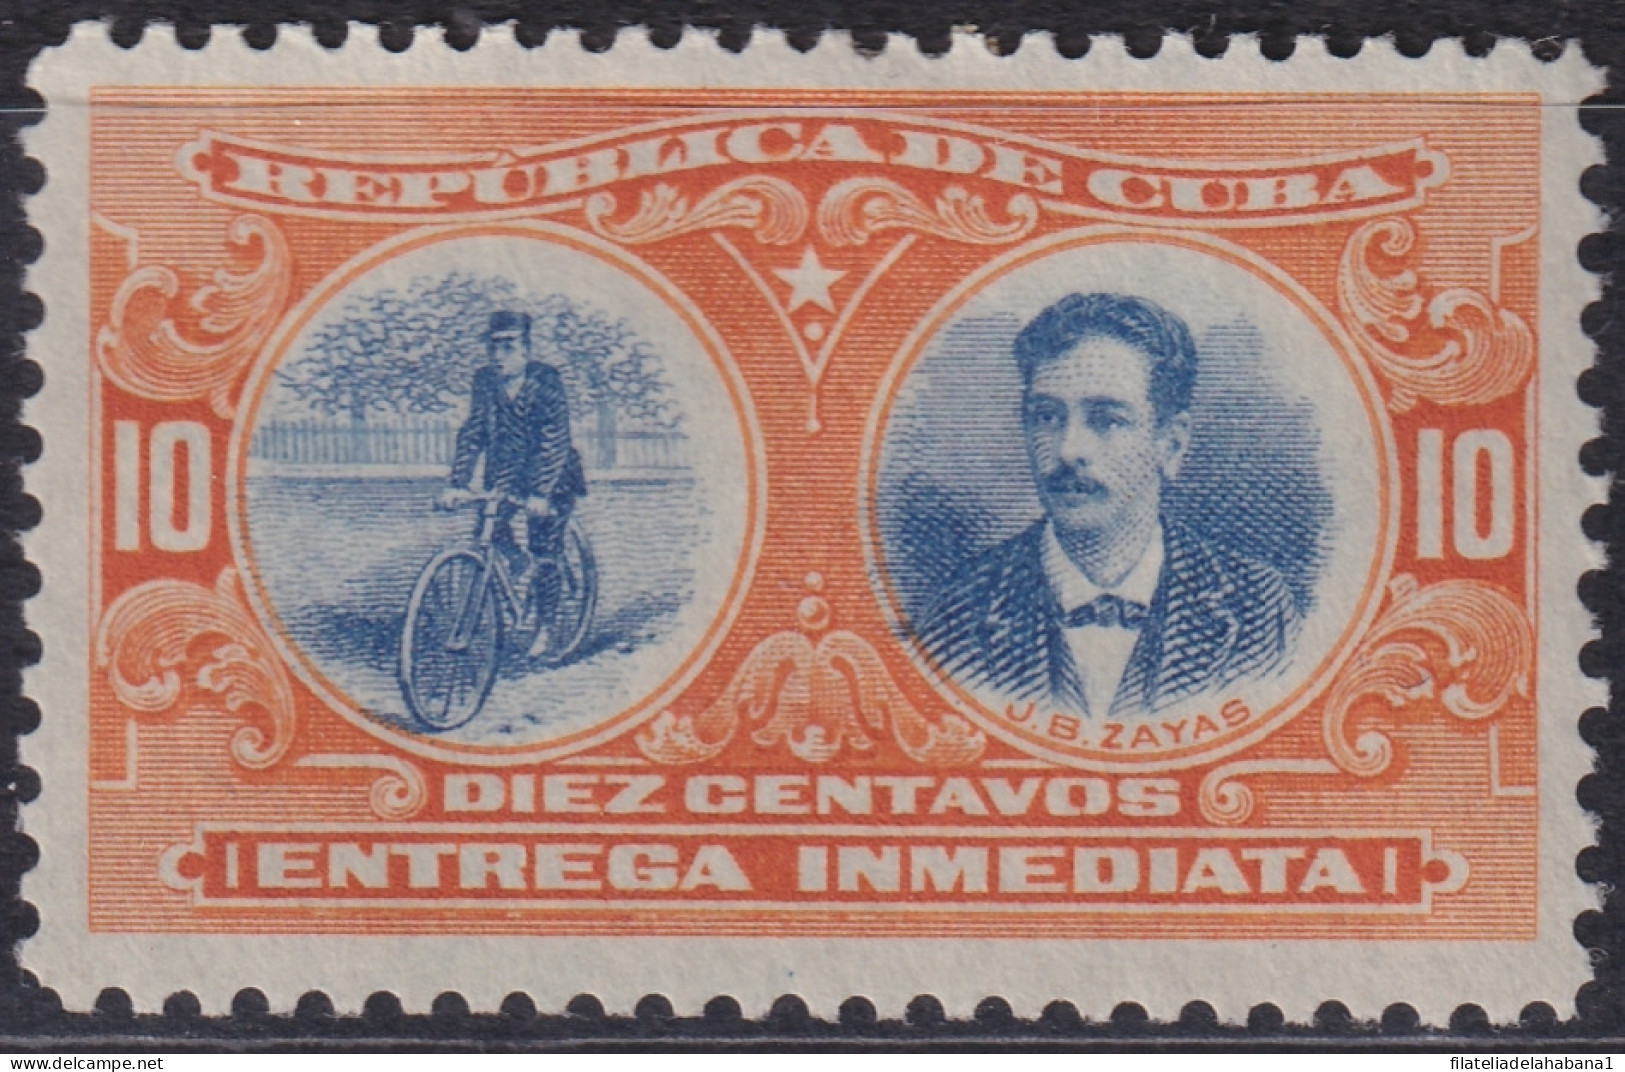 1910-225 CUBA 1910 10c MH ENTREGA ESPECIAL GEN JUAN BRUNO ZAYAS CYCLE BYCLICLE.  - Ungebraucht